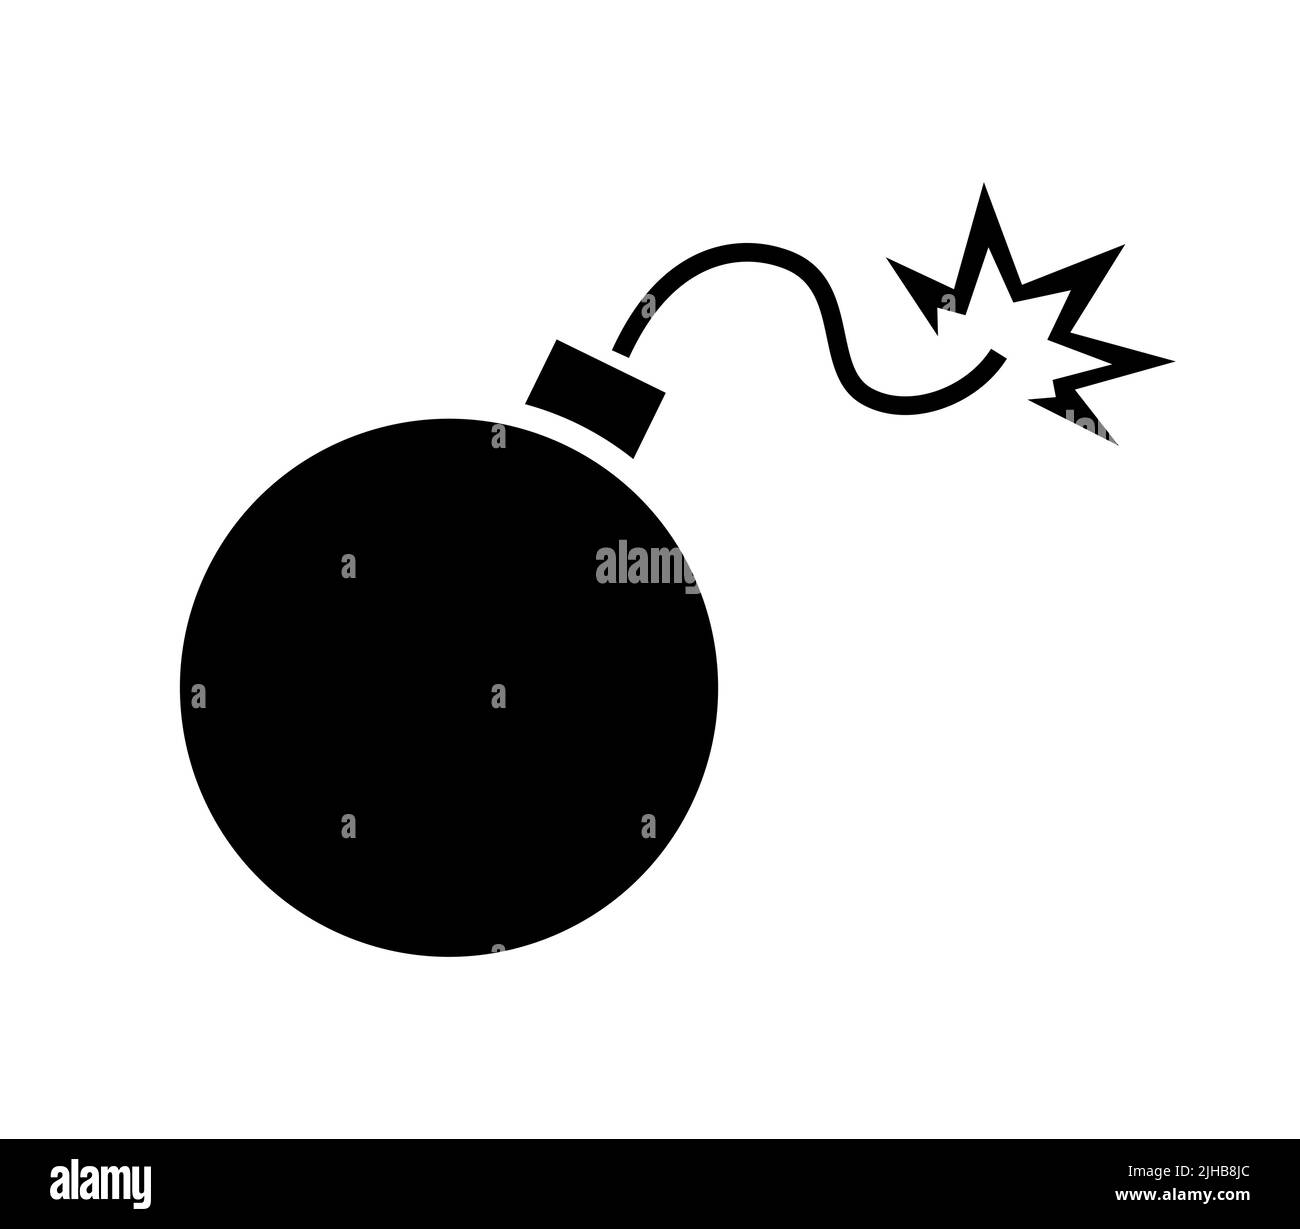 Bomb fuse icon. Bomb mlack silhouette simple icon. Vector illustration Stock Vector